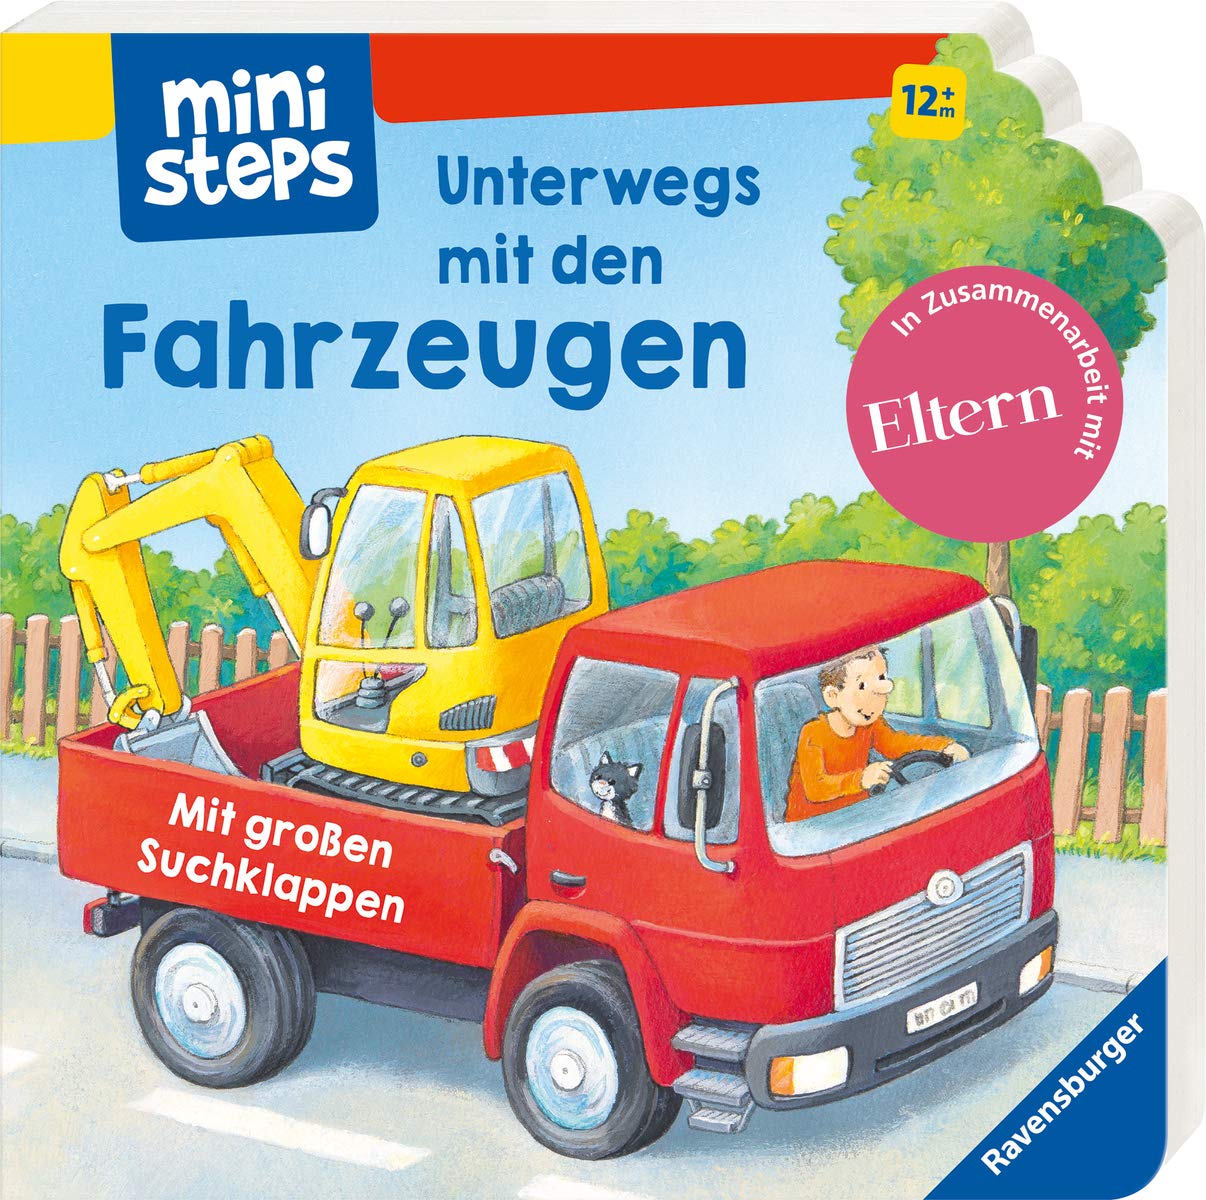 Ravensburger, Kathrin Lena Orso, Pappbilderbücher, Kinderbücher, Unterwegs mit den Fahrzeugen, Mini Steps